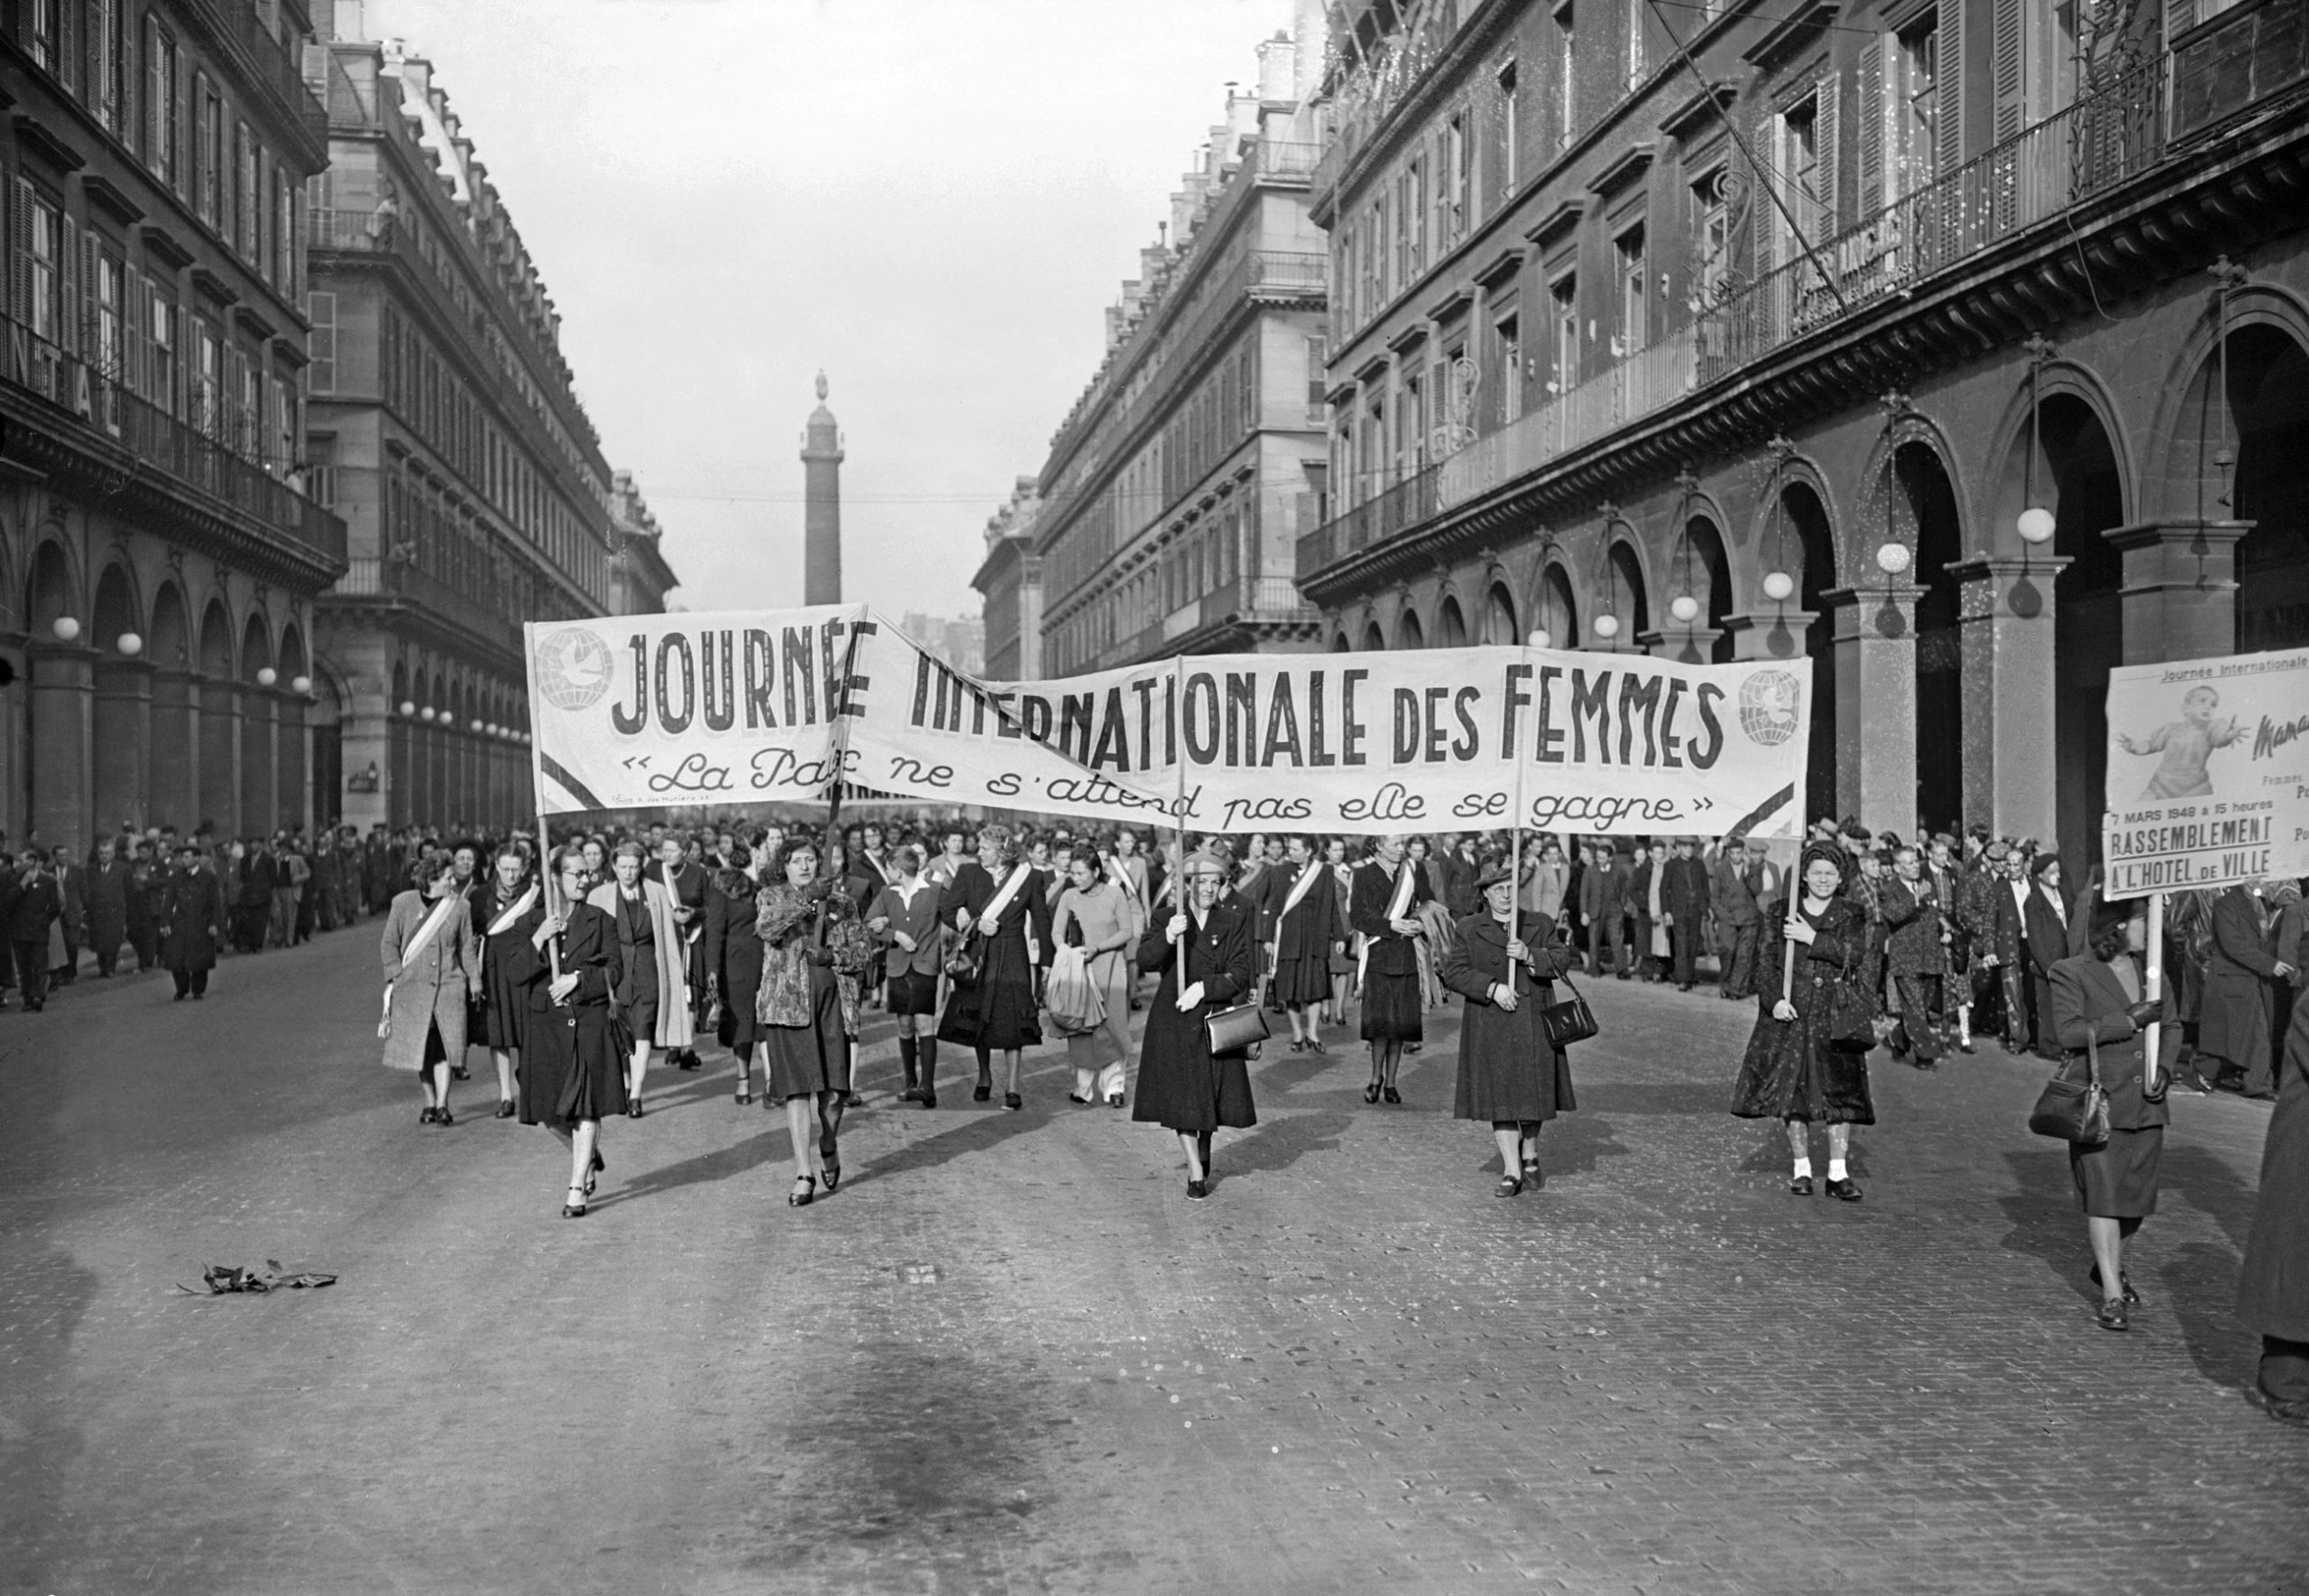 FRANCE-FEMME-MANIFESTATION (50406 BIS)